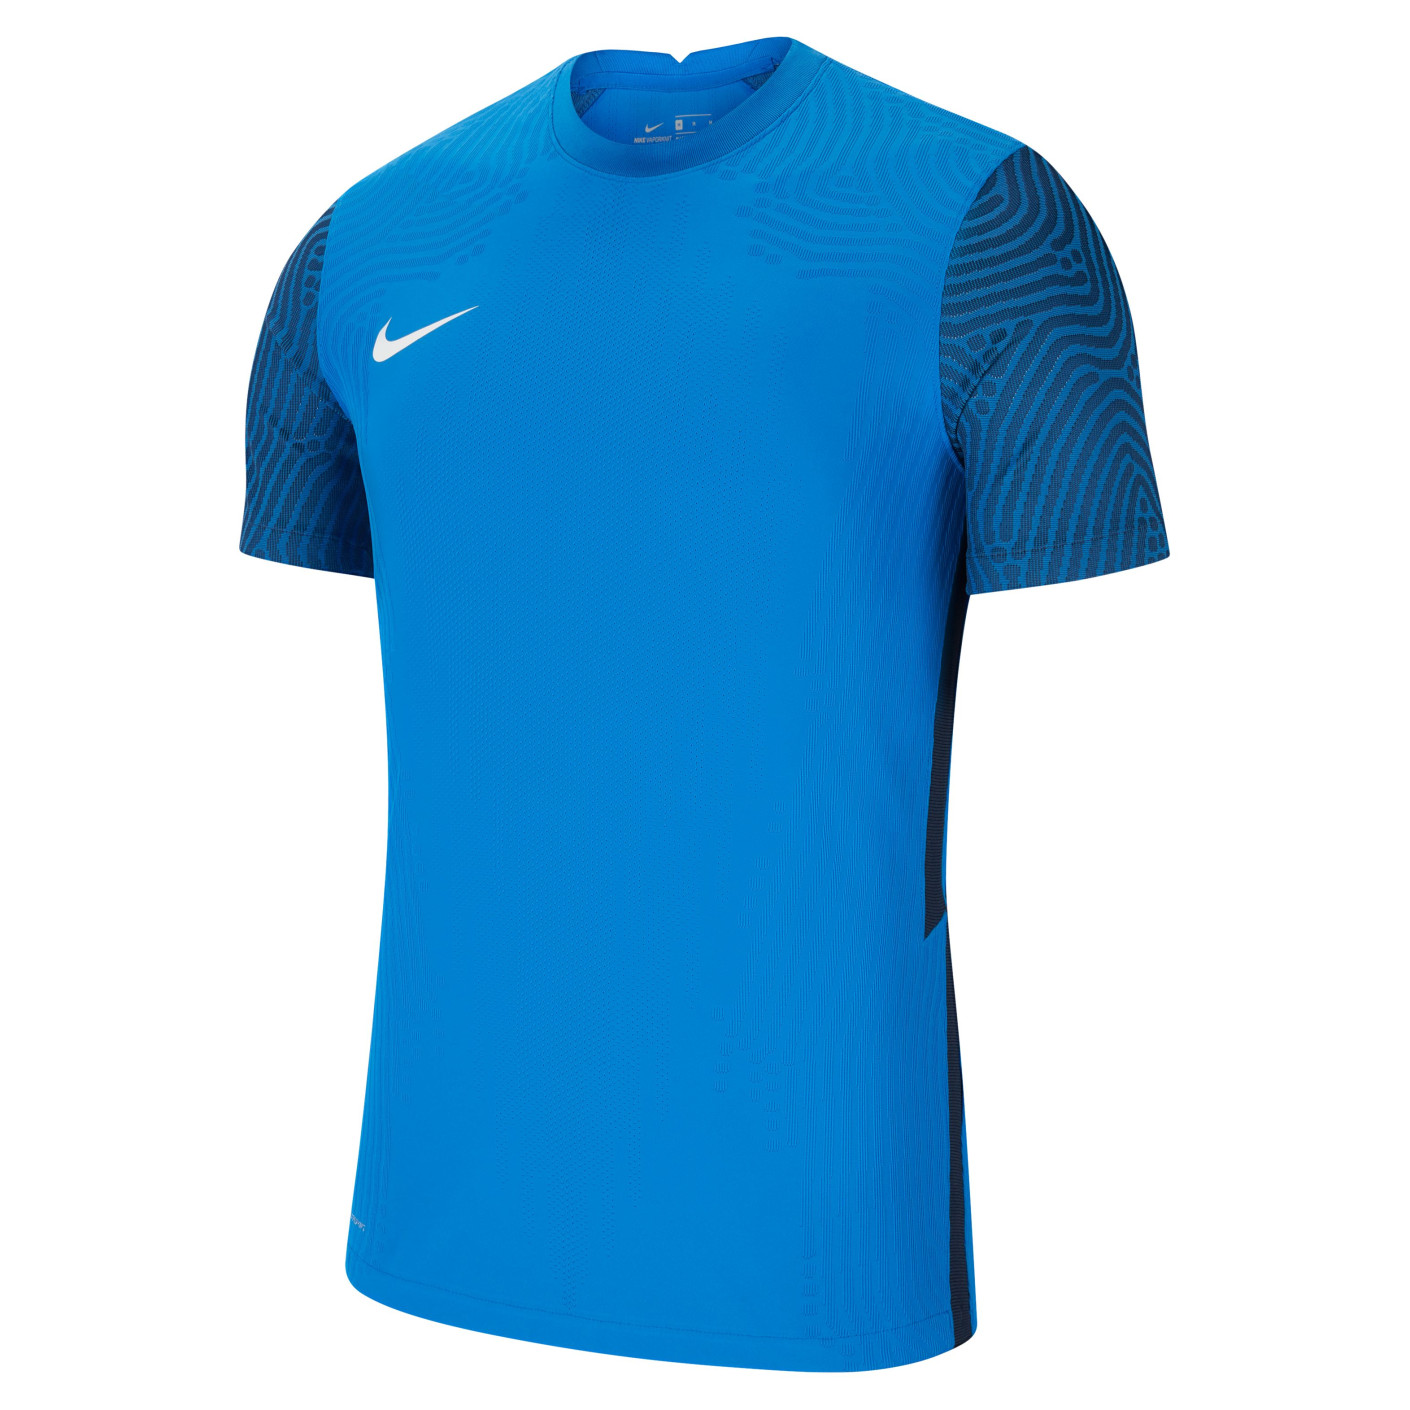 doorgaan Macadam Schaken Nike VaporKnit III Royal Blue Football Shirt - KNVBshop.nl